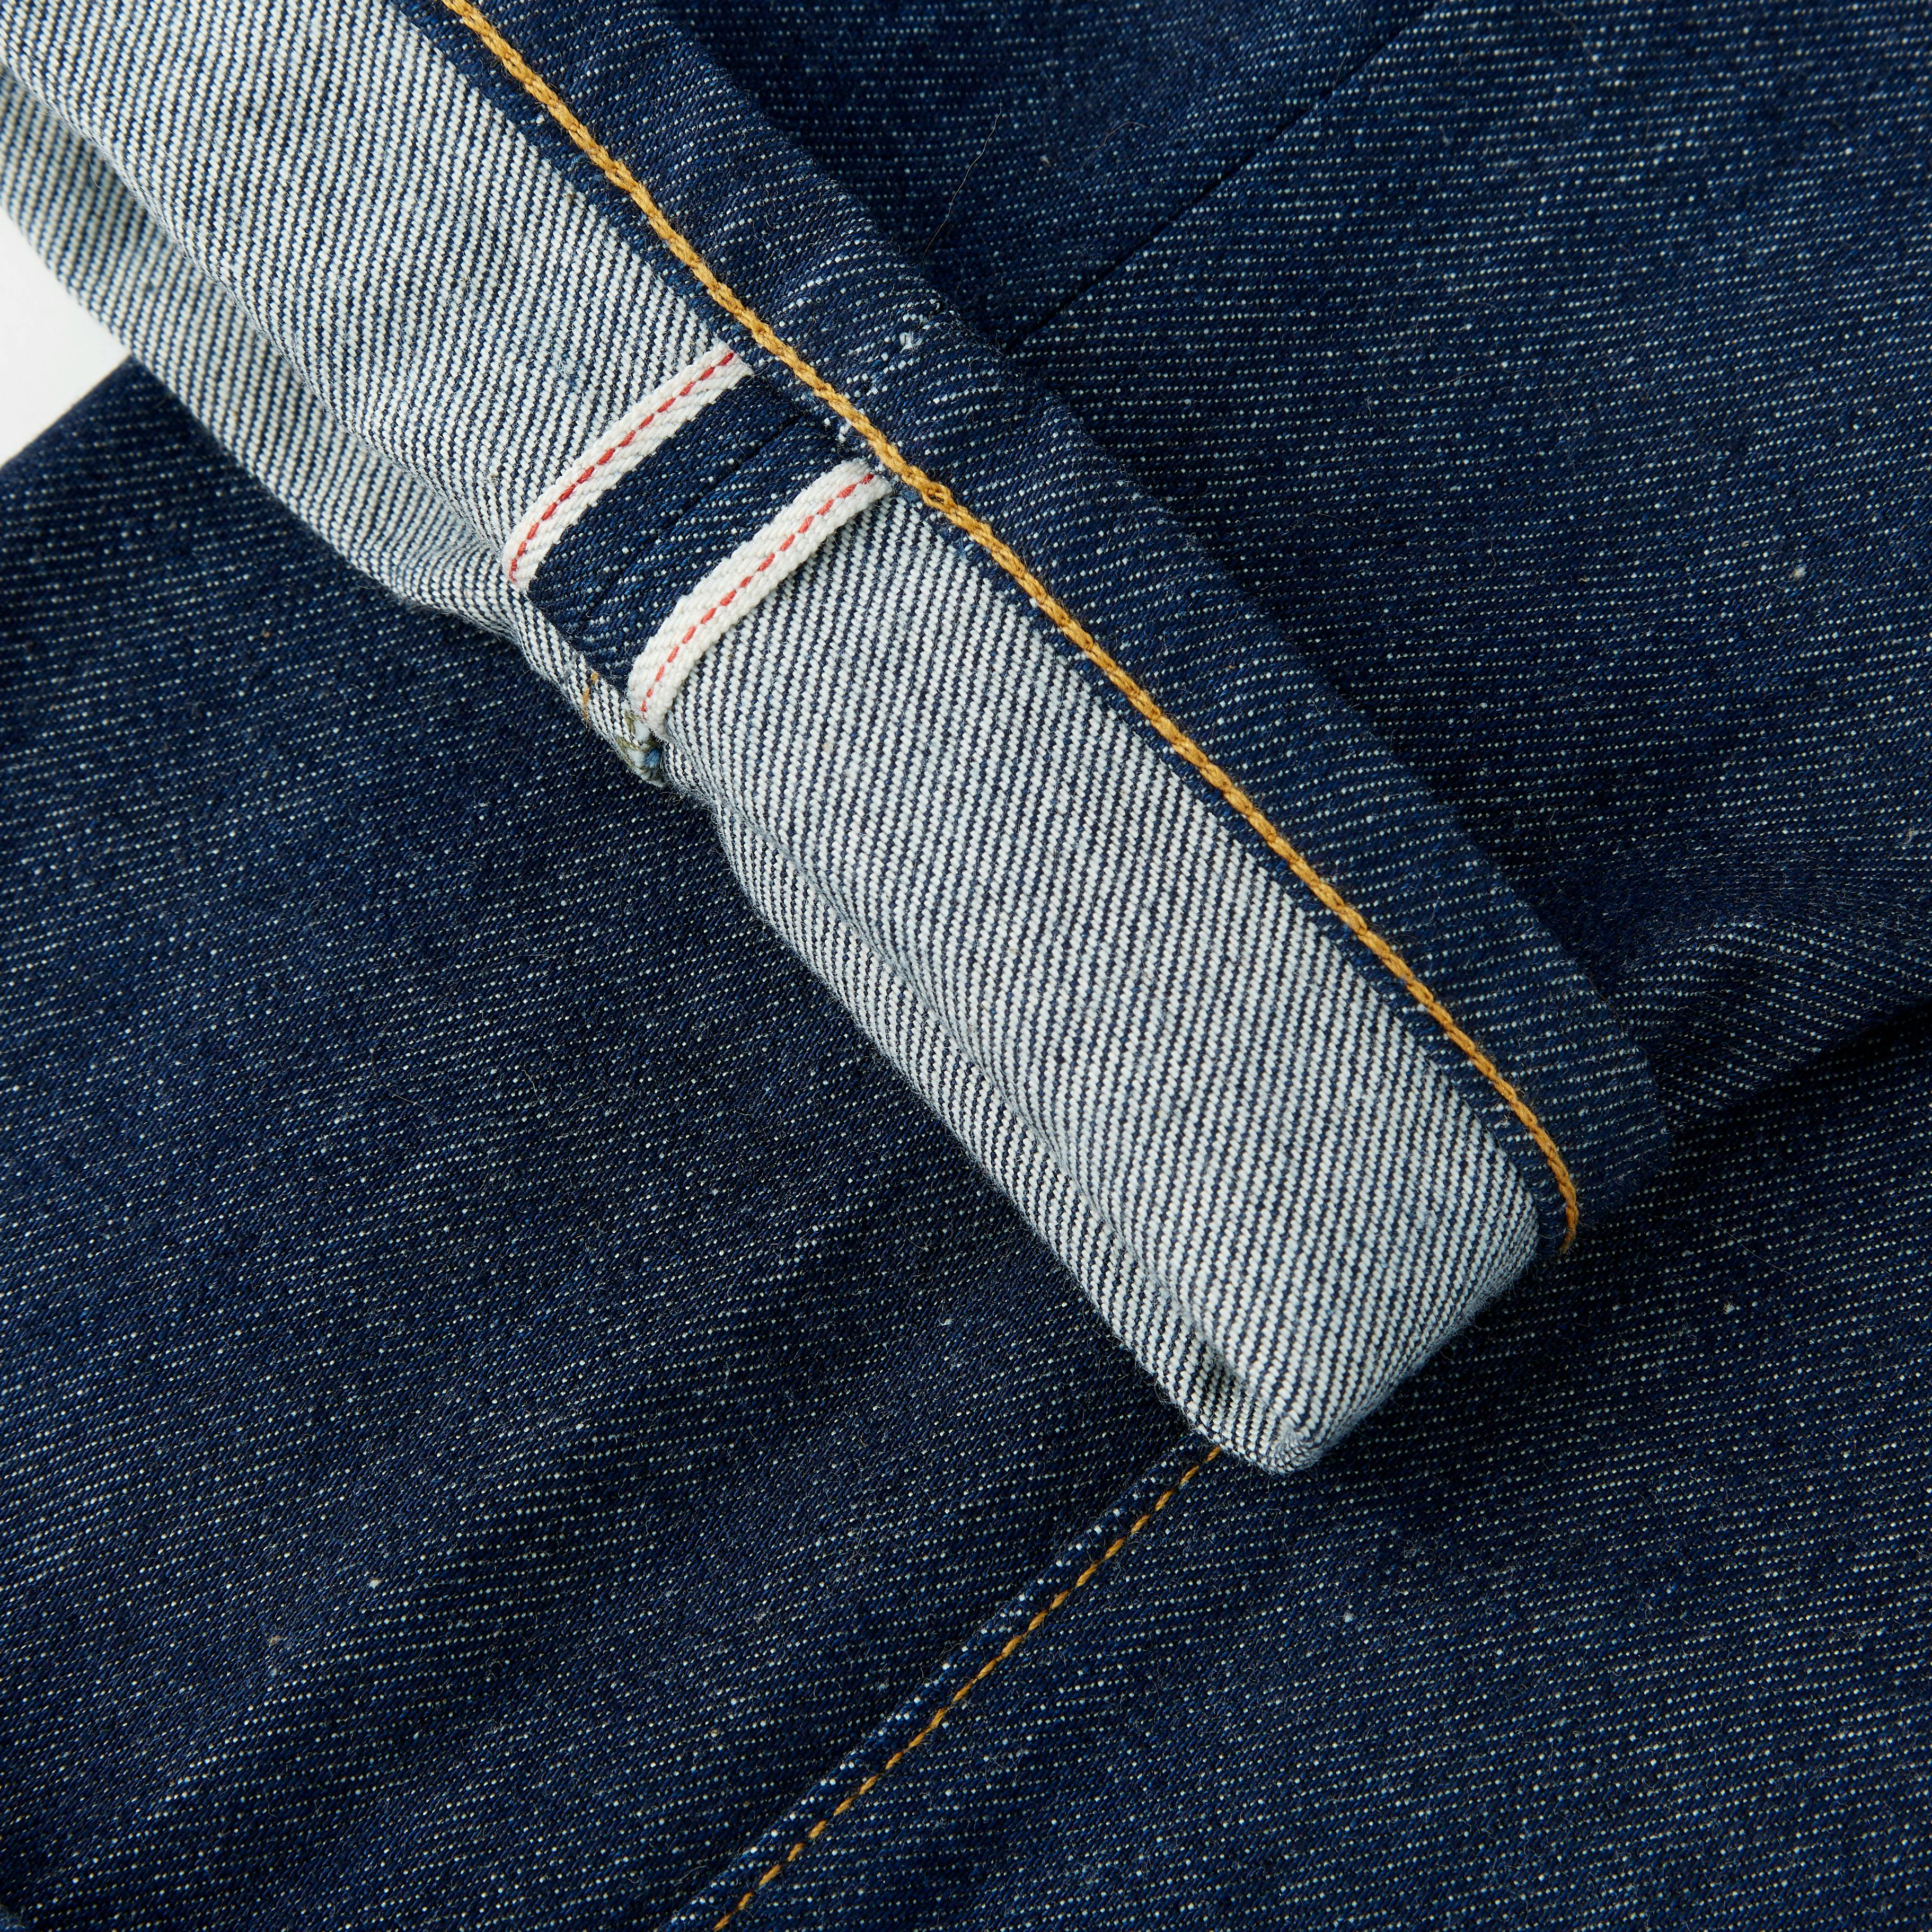 Slim Straight Jean in Selvedge Rigid Denim